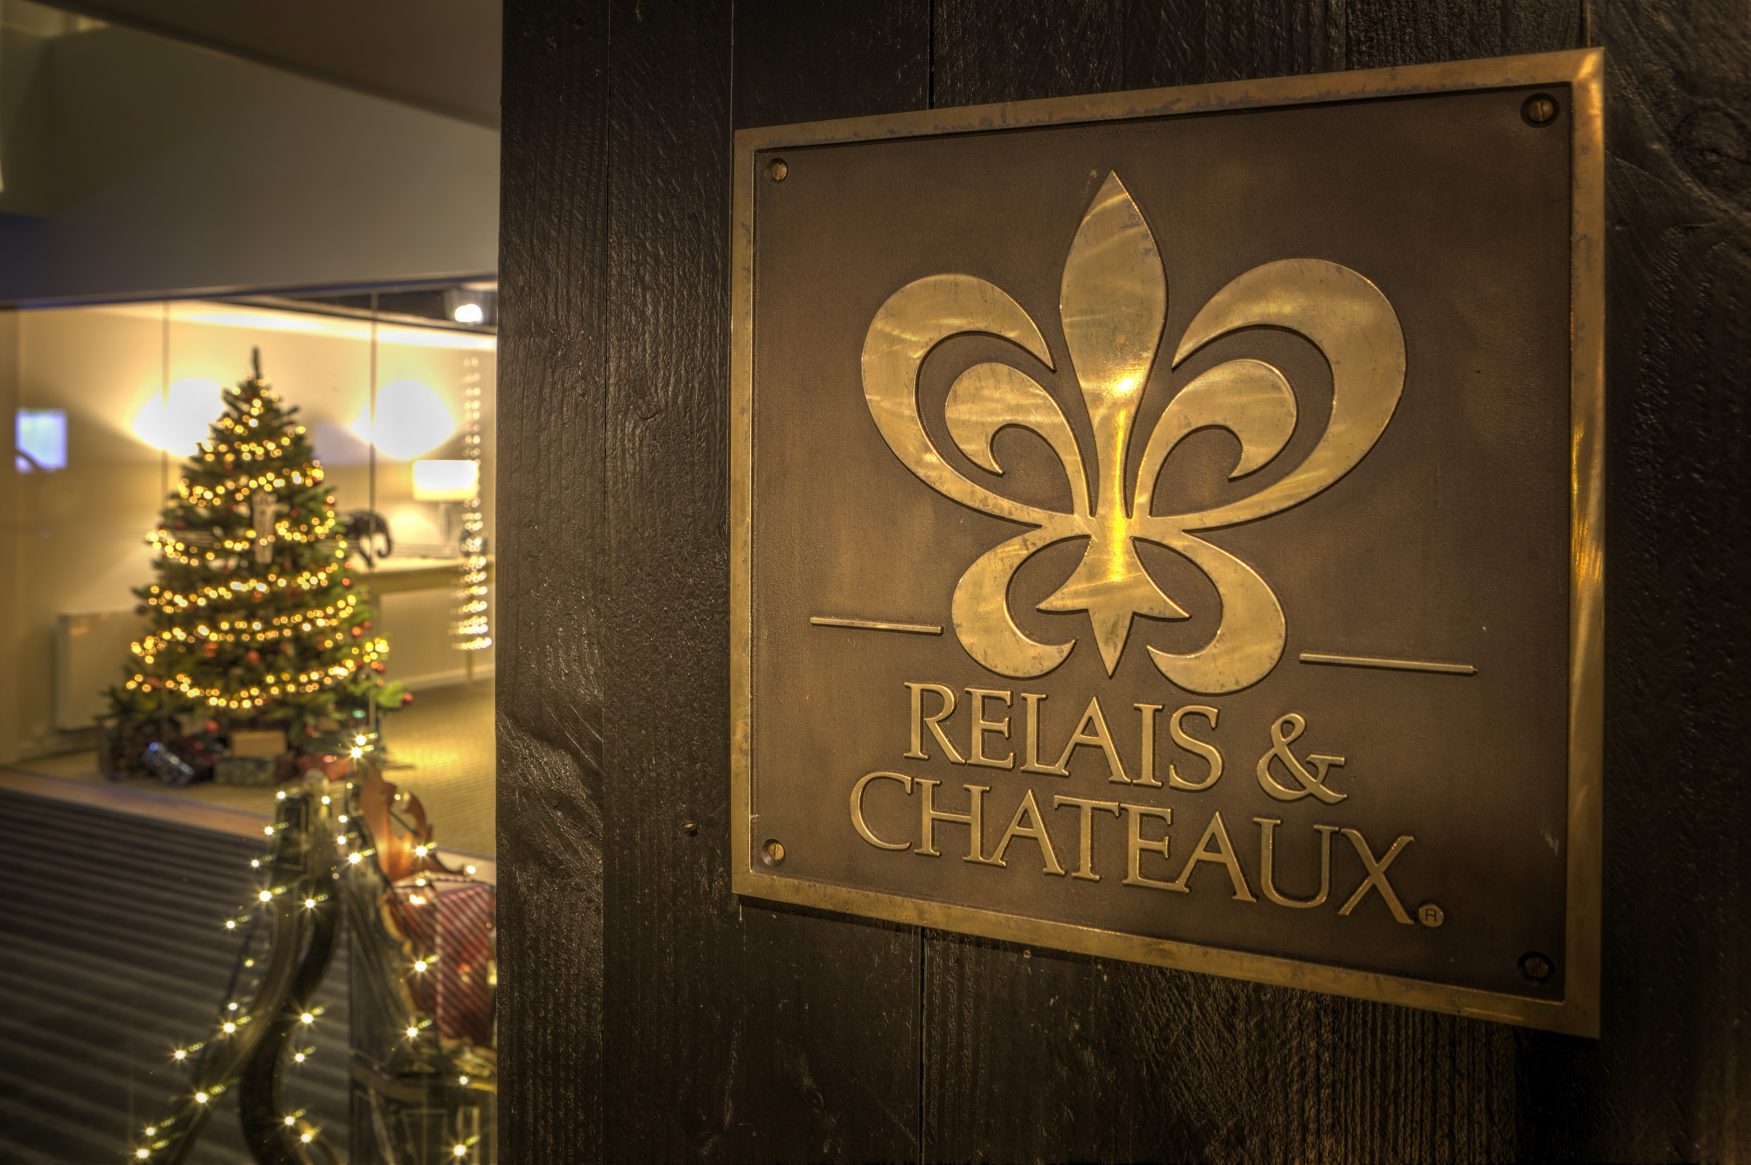 Das Relais & Chateux zur Weihnachtszeit Foto: Parkhotel de Wiemsel,